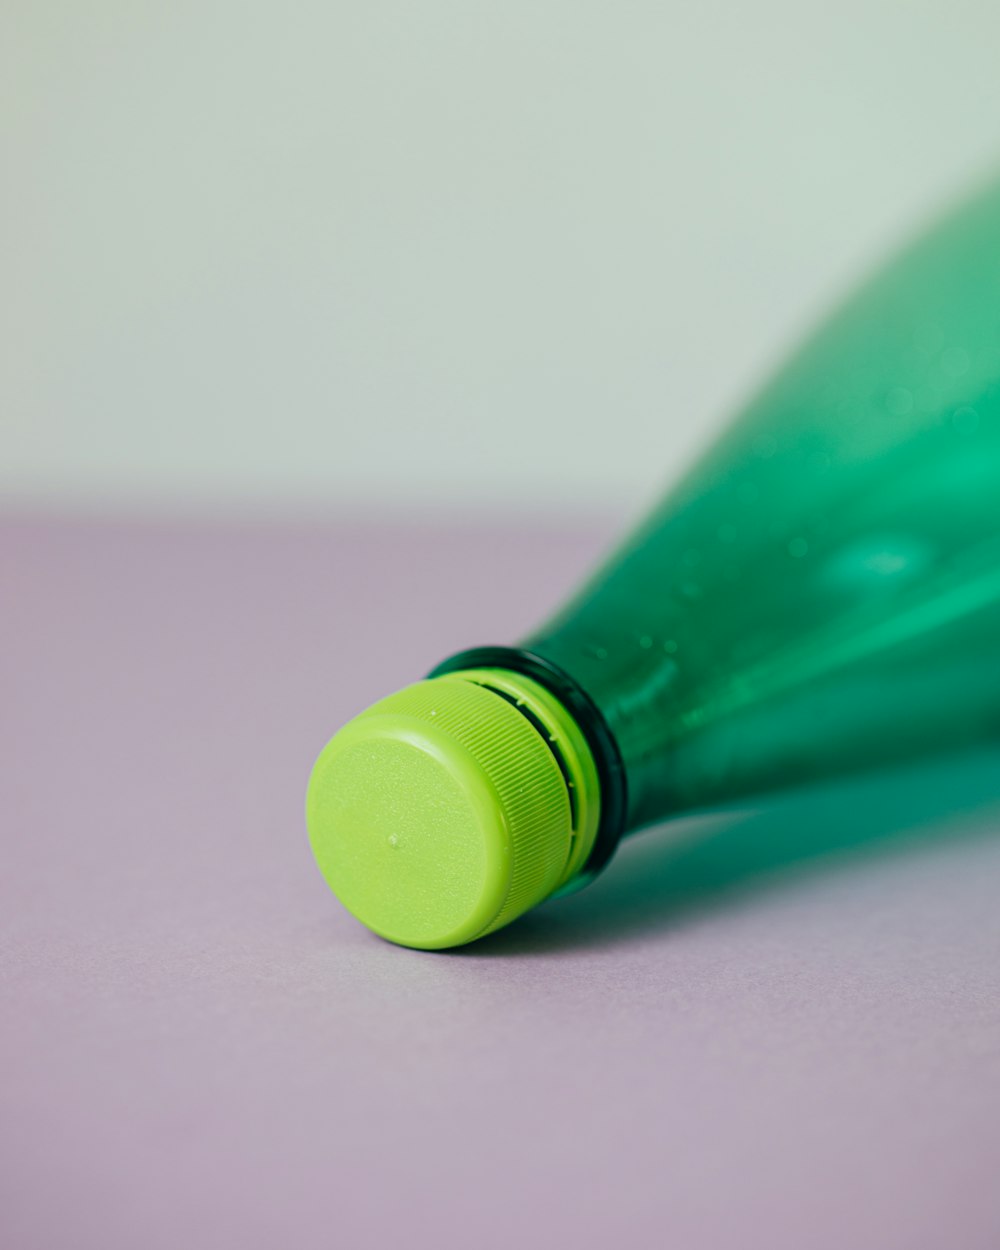 bouteille en plastique verte sur surface rose